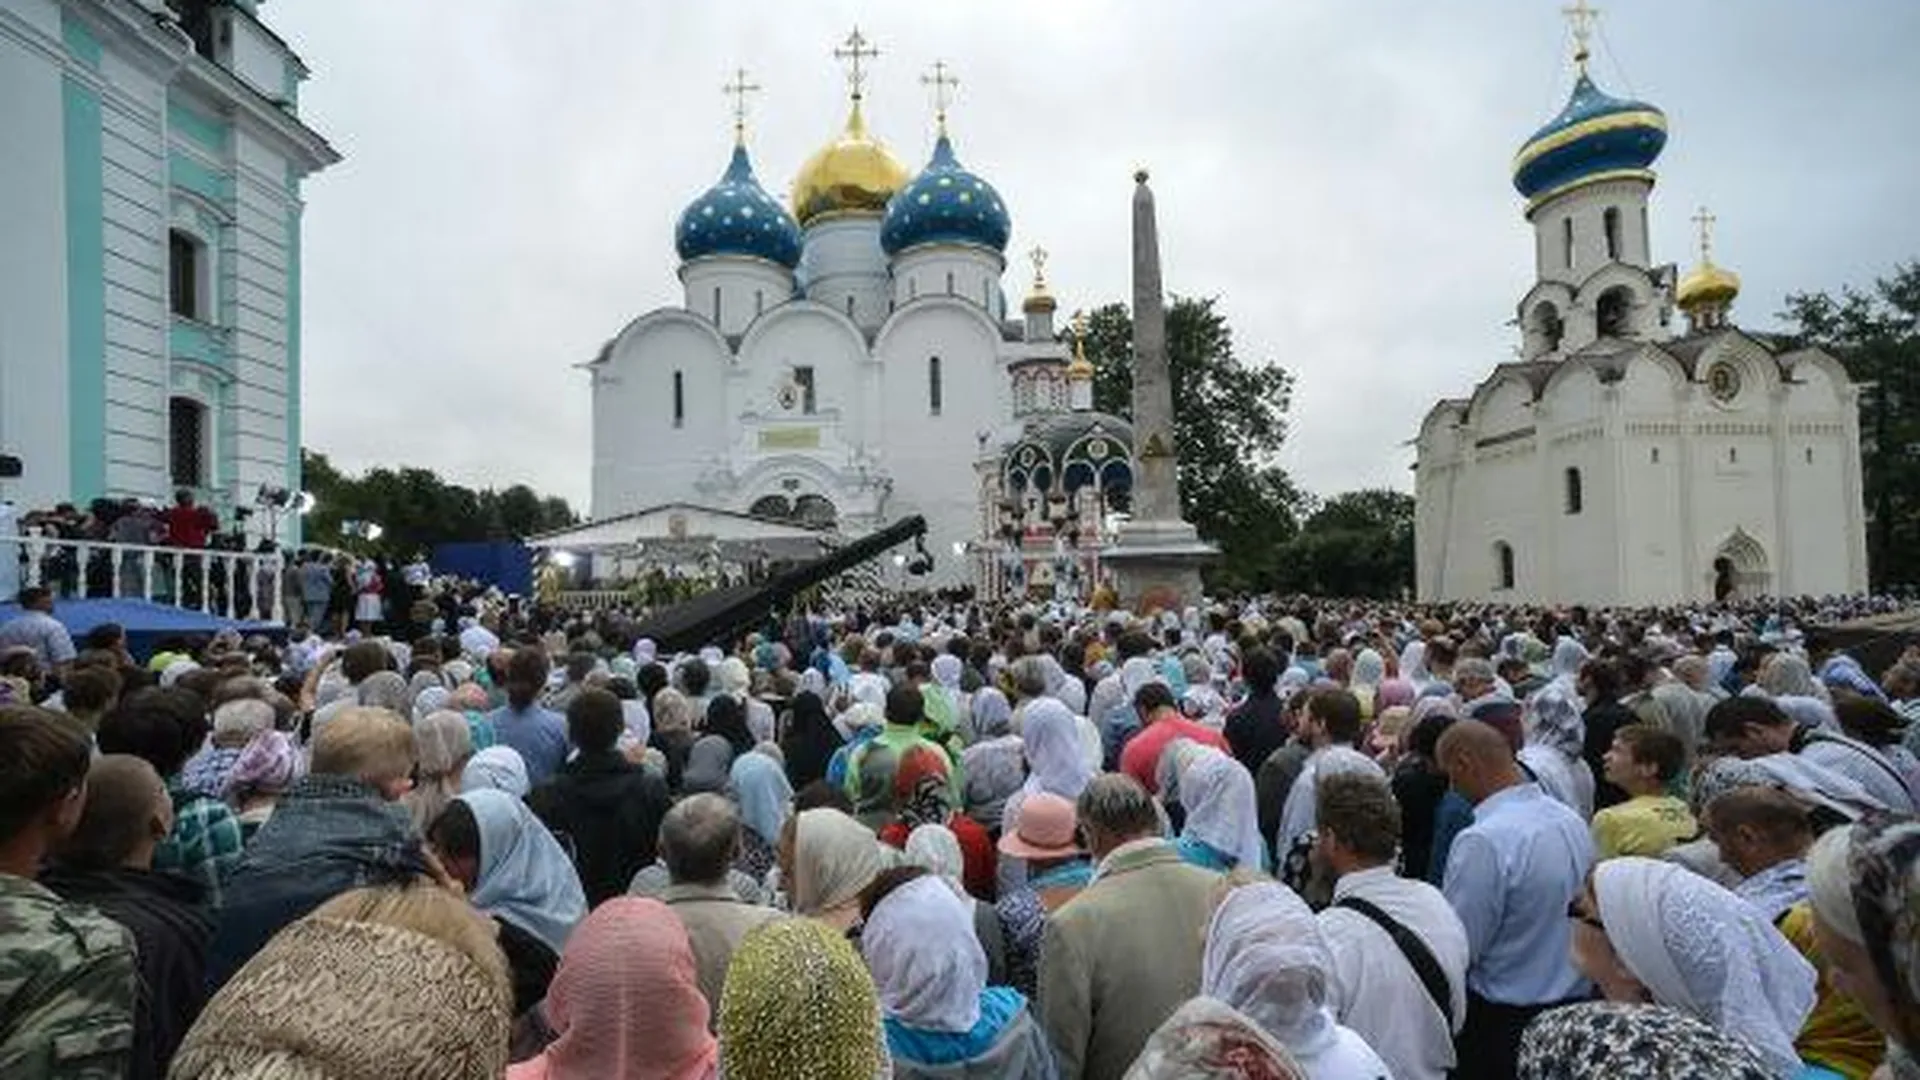 Сергиев Посад во время праздника посетили около 100 тыс. человек